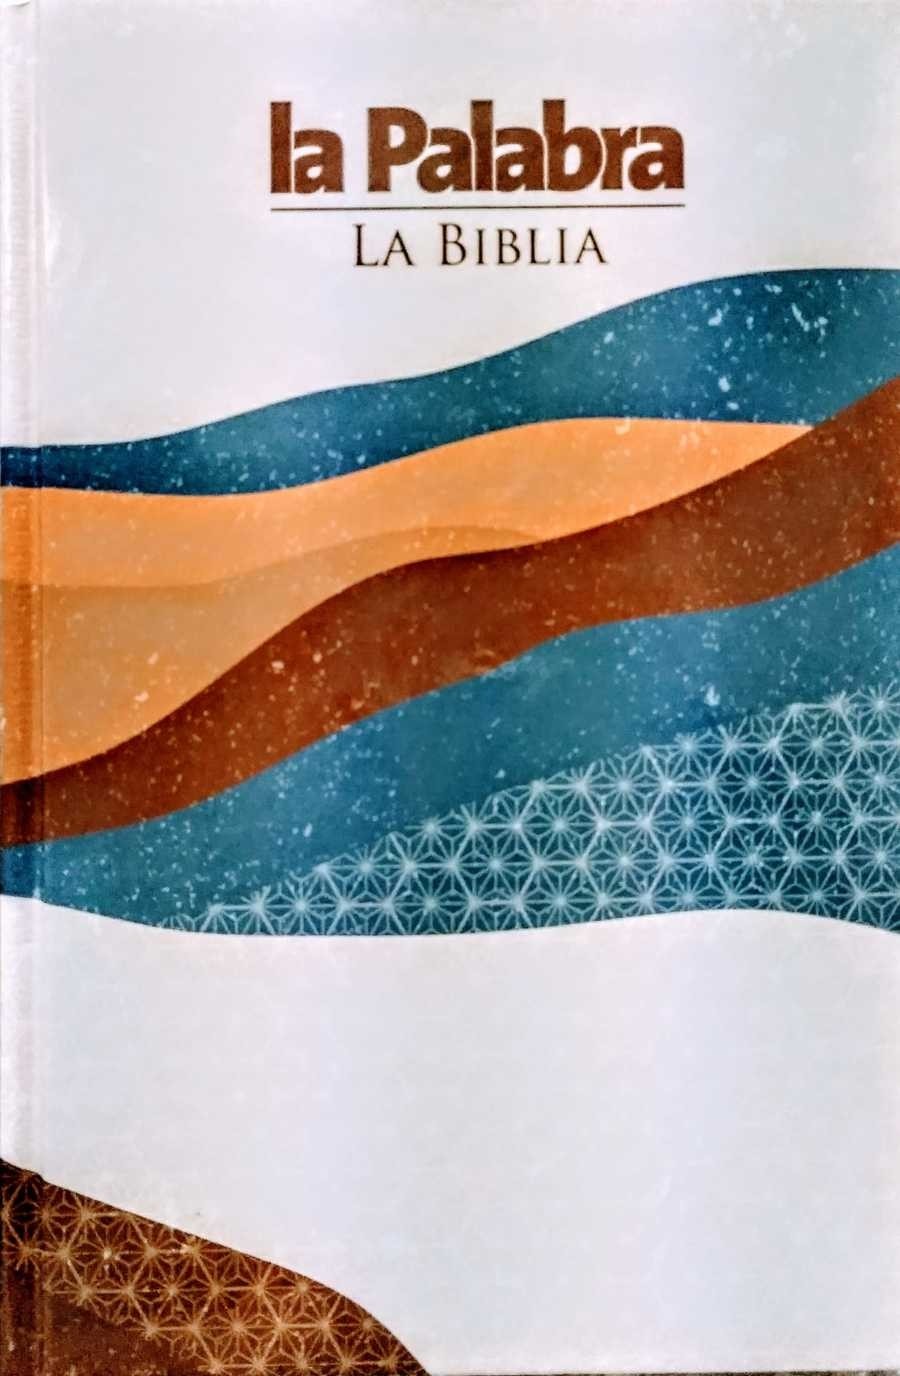 CAJA DE 24 BIBLIAS LA PALABRA, 3º EDICIÓN.